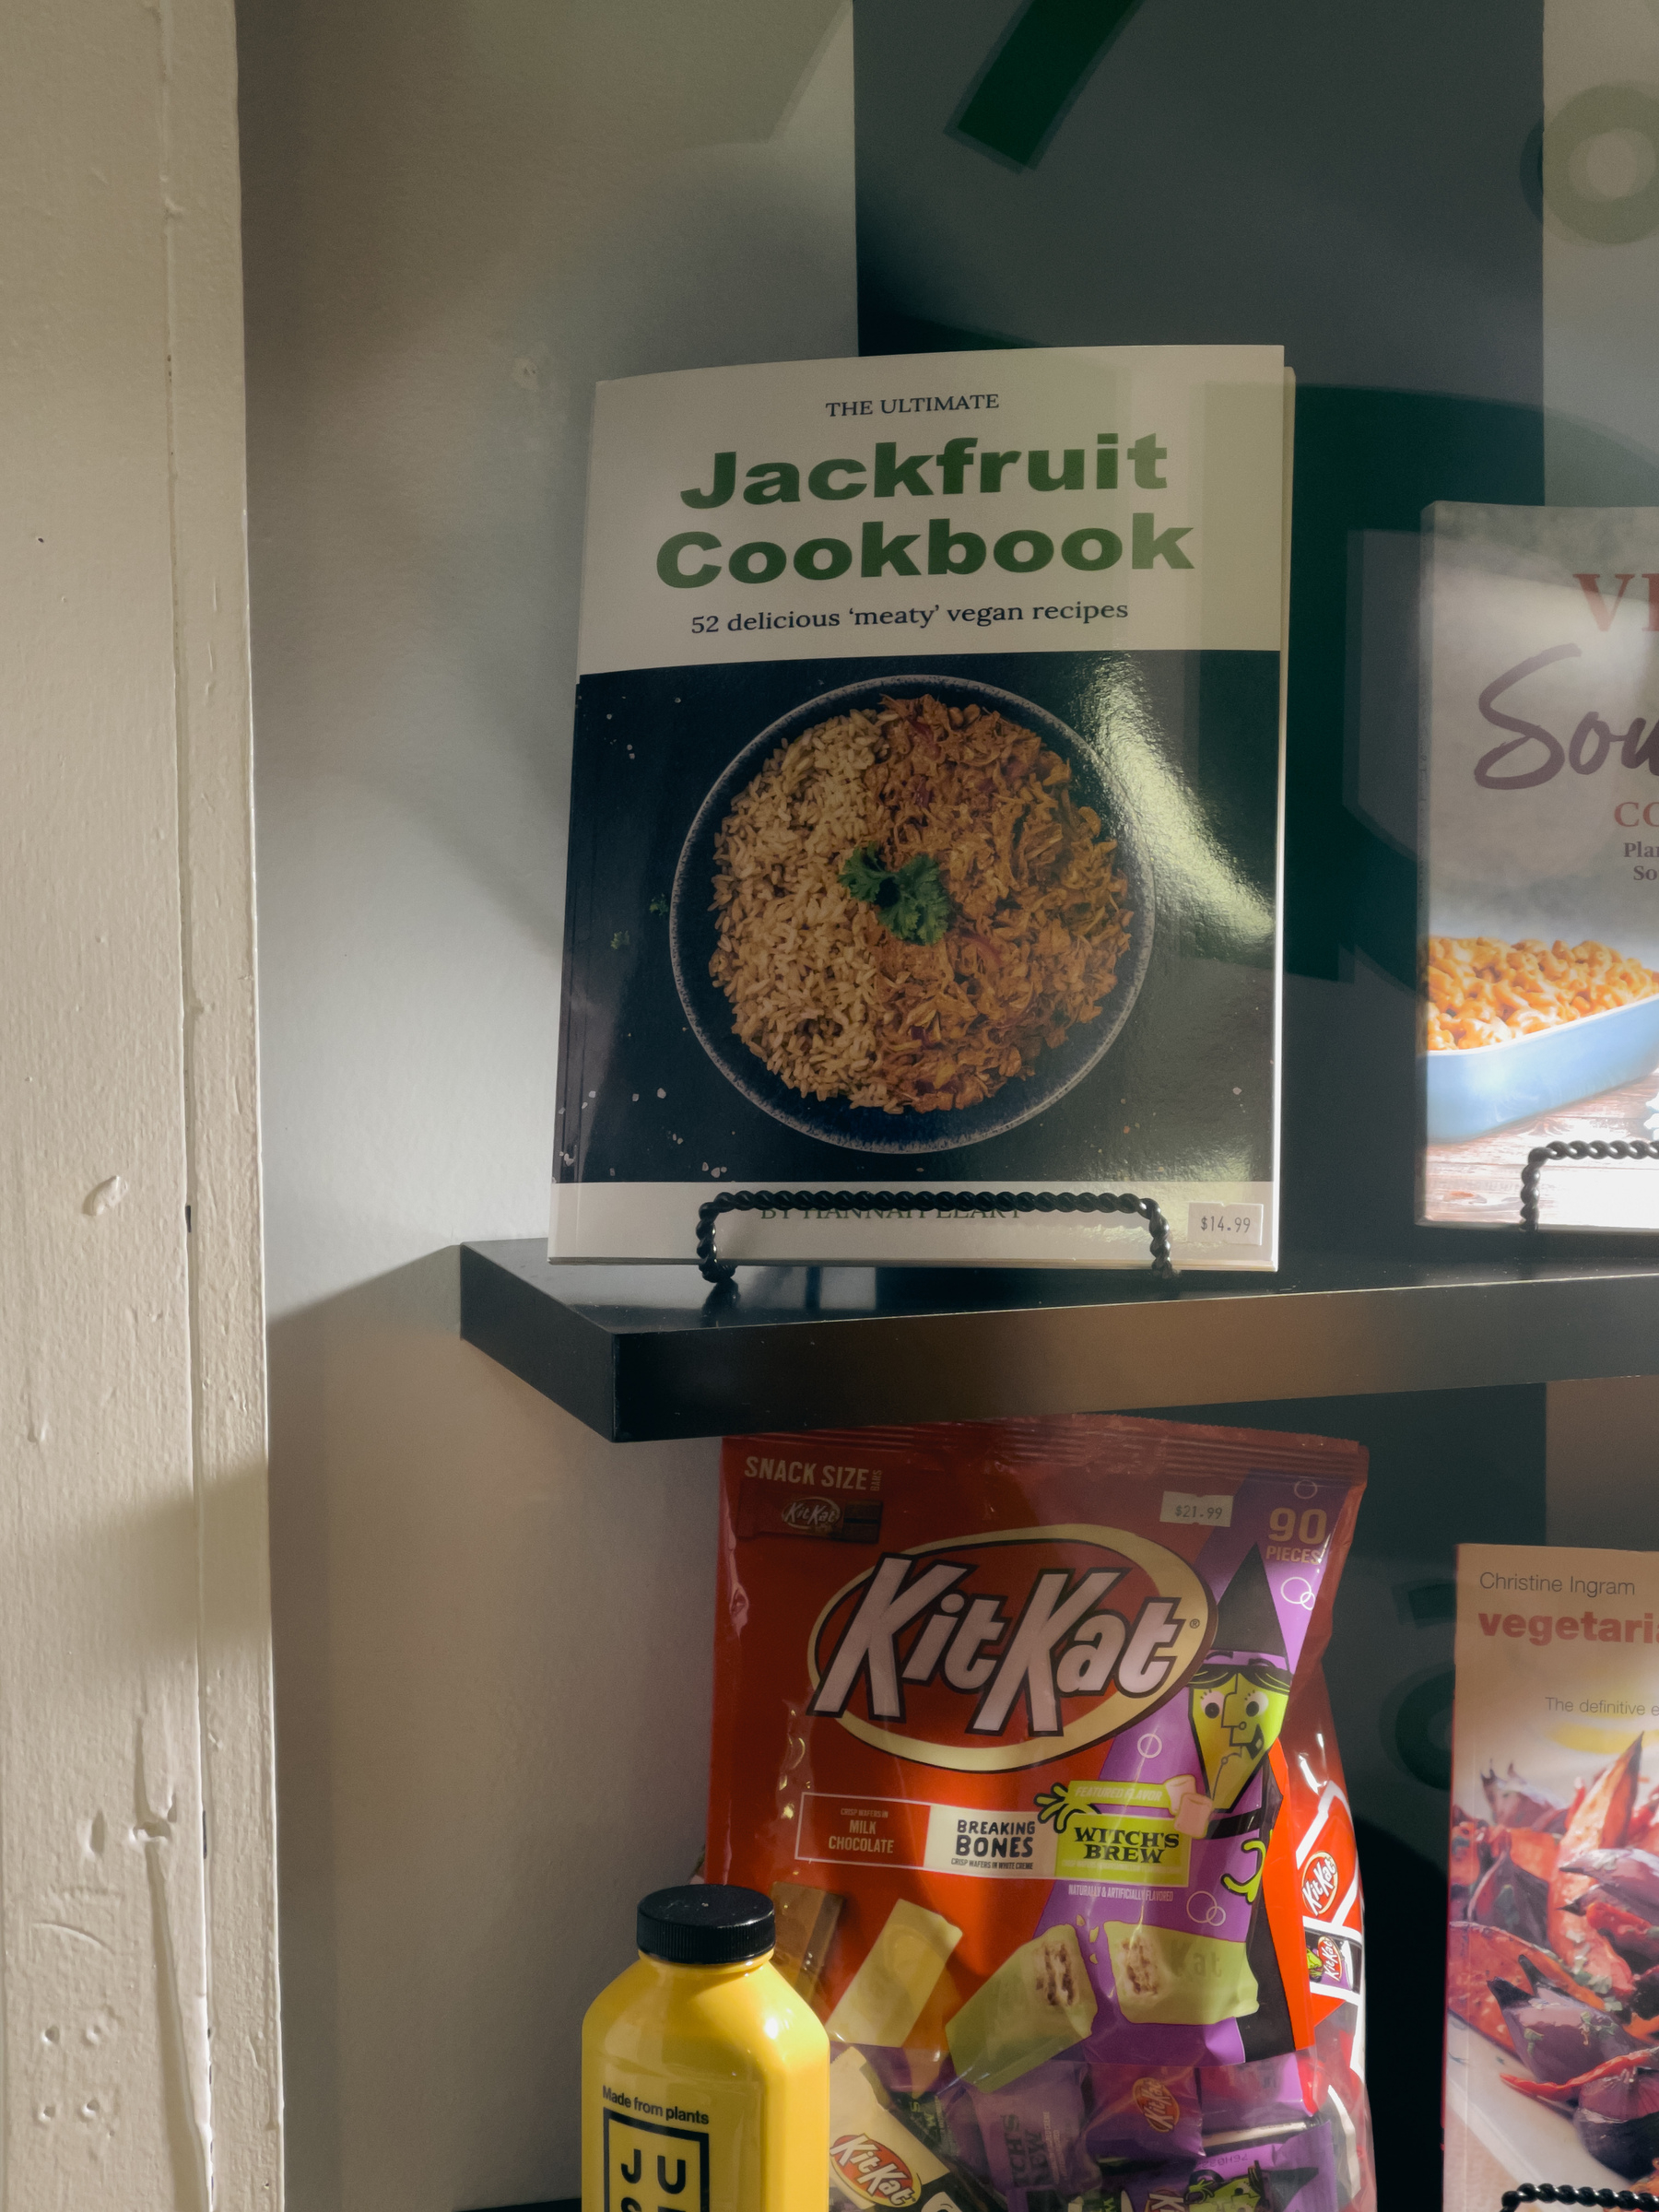 Jackfruit cookbook in shop window display.